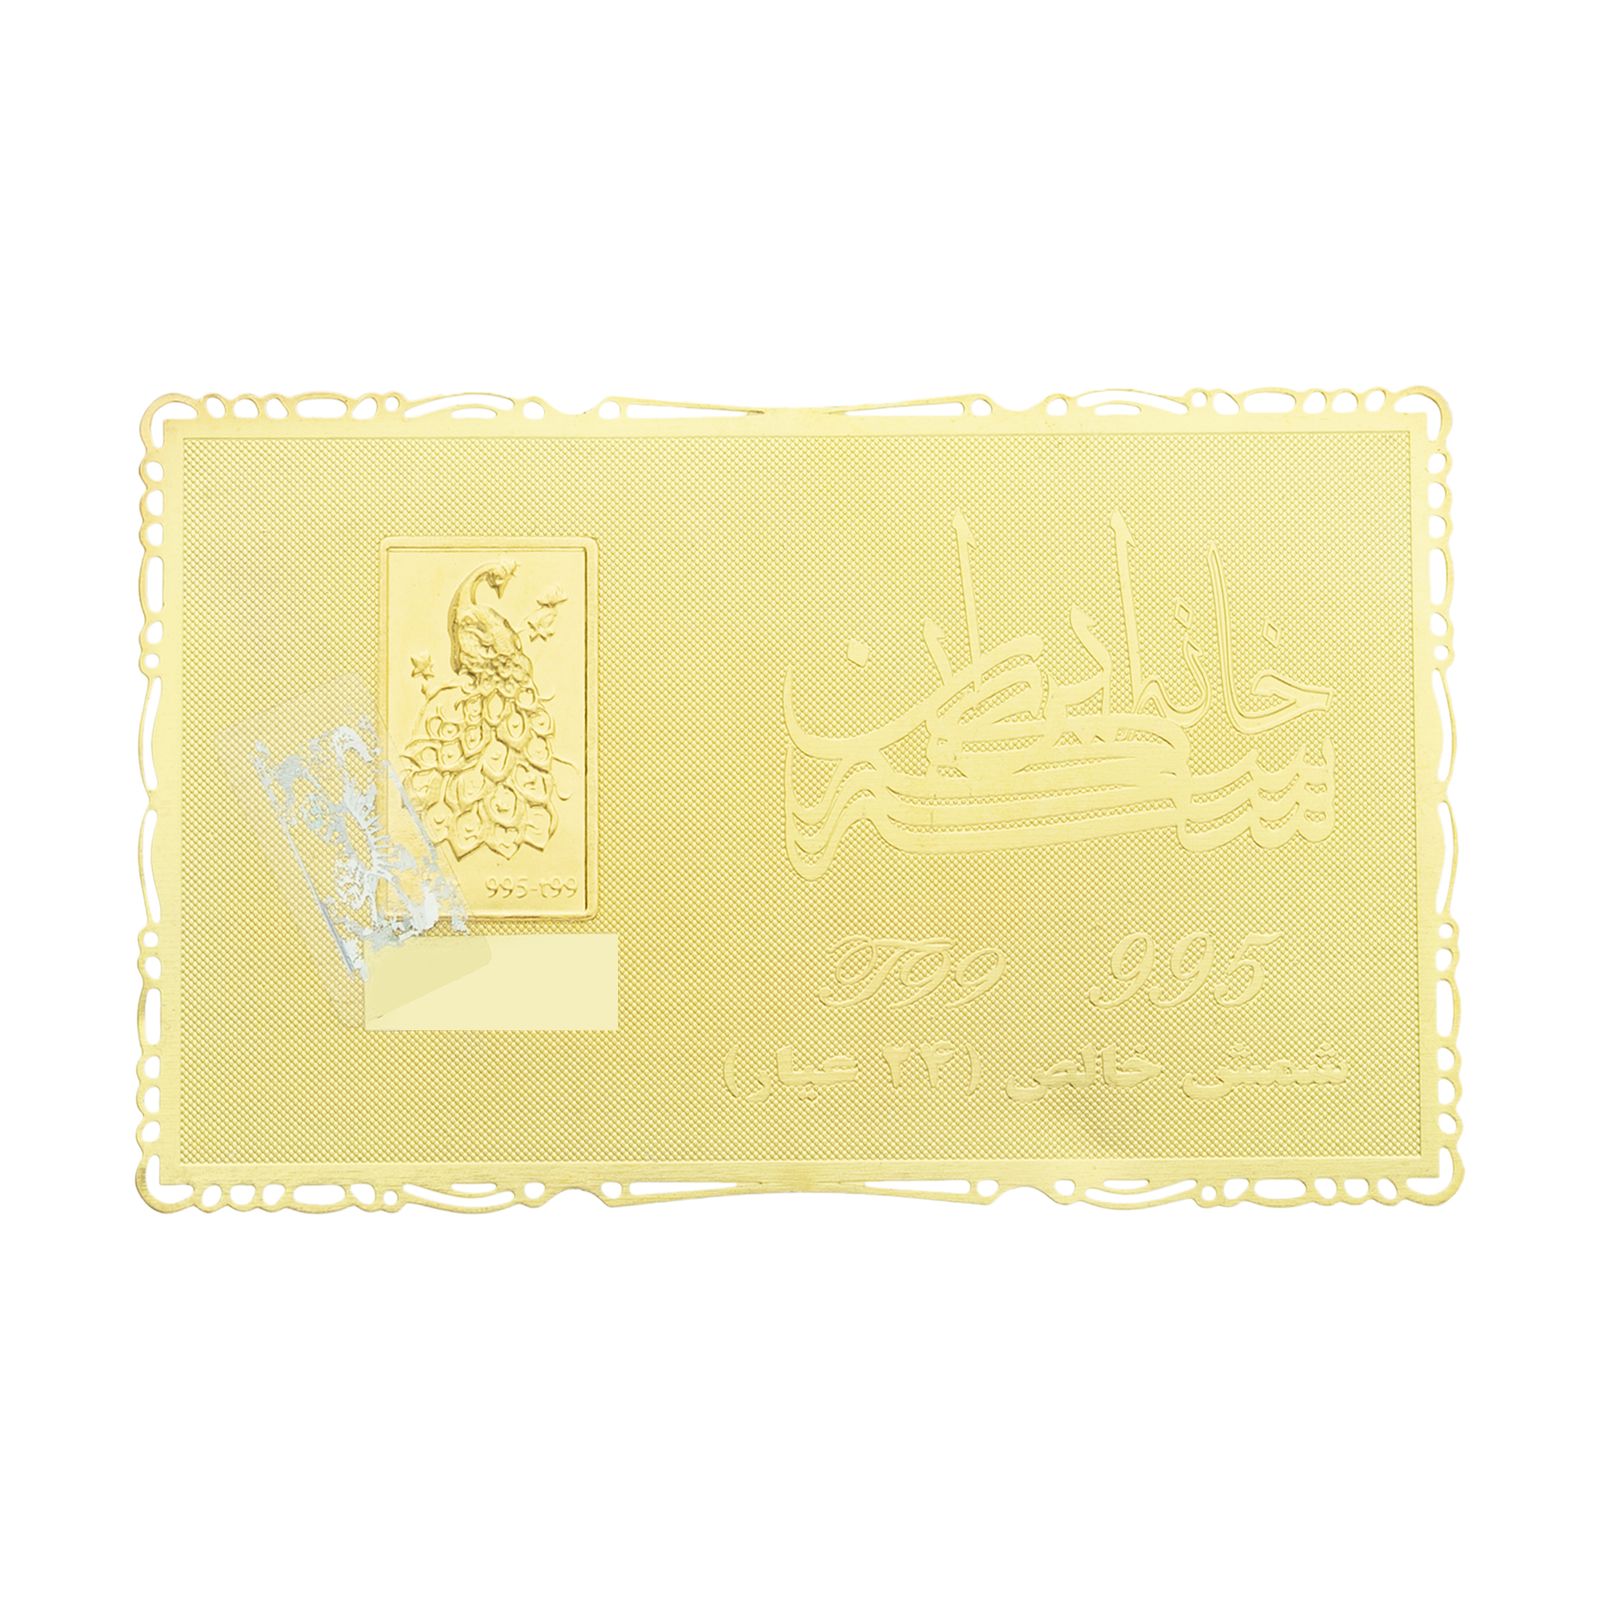 طلا گرمی 24 عیار خانه سکه ایران کد 005 -  - 1